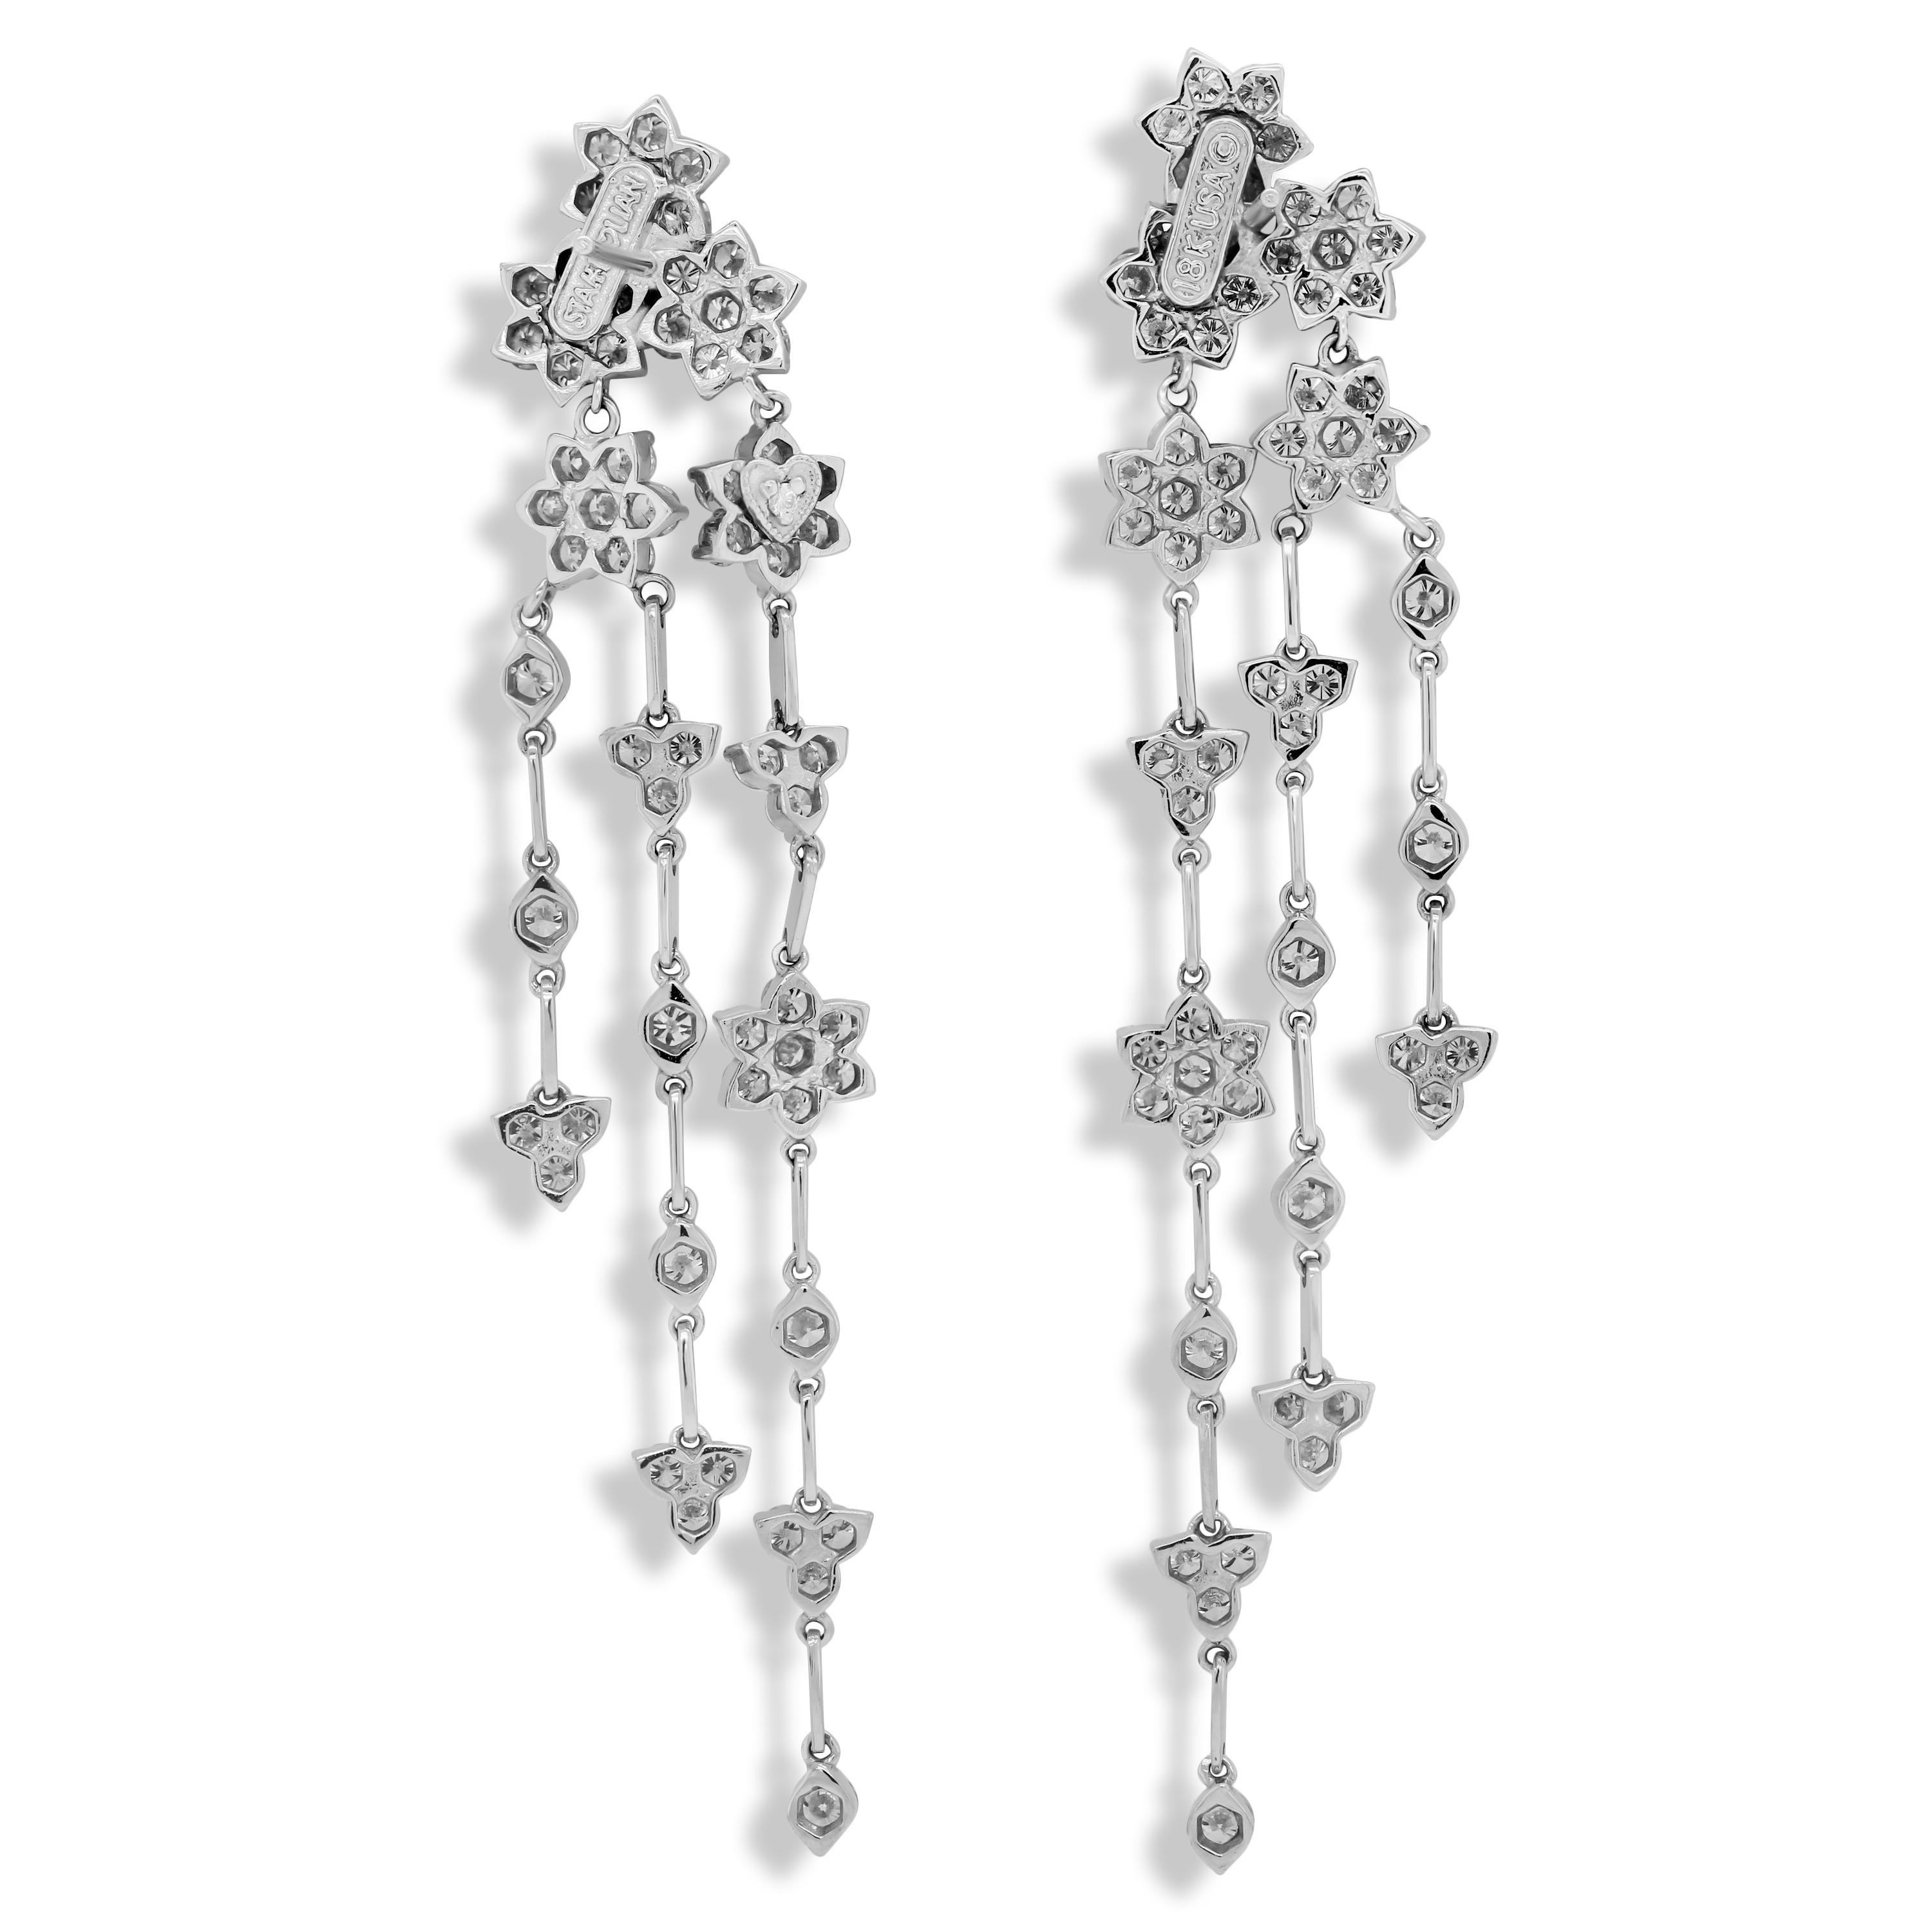 Stambolian - Boucles d'oreilles pendantes chandelier en or blanc 18 carats et diamants en grappes

6,14 carats de diamants de couleur G et de pureté VS

Les dos post-oméga sont utilisés à des fins de sécurité.

Les boucles d'oreilles ont une